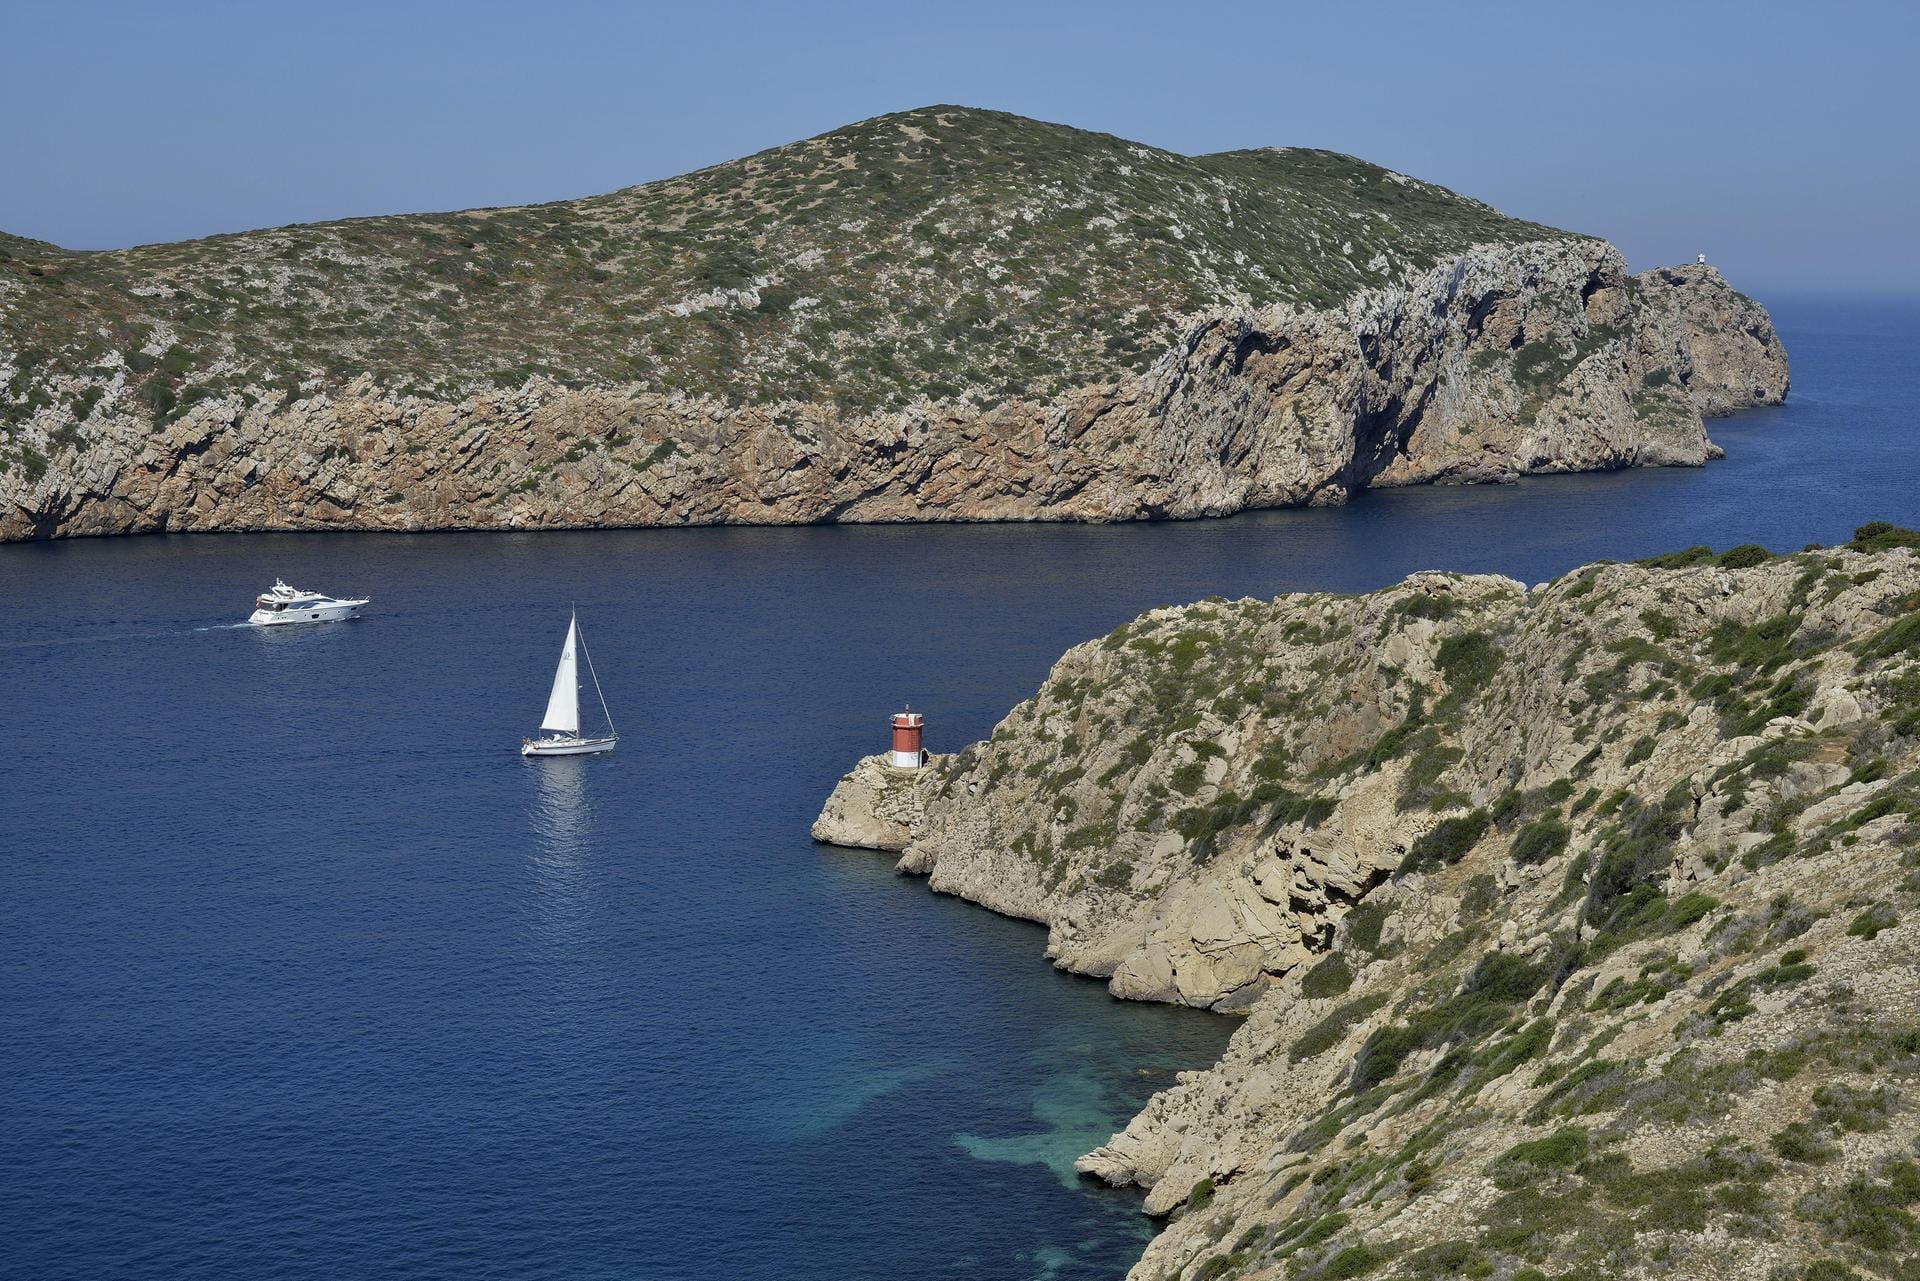 Das Cabrera-Archipel ist eine einsame Inselgruppe vor der Küste Mallorcas und der einzige Nationalpark der Balearen.